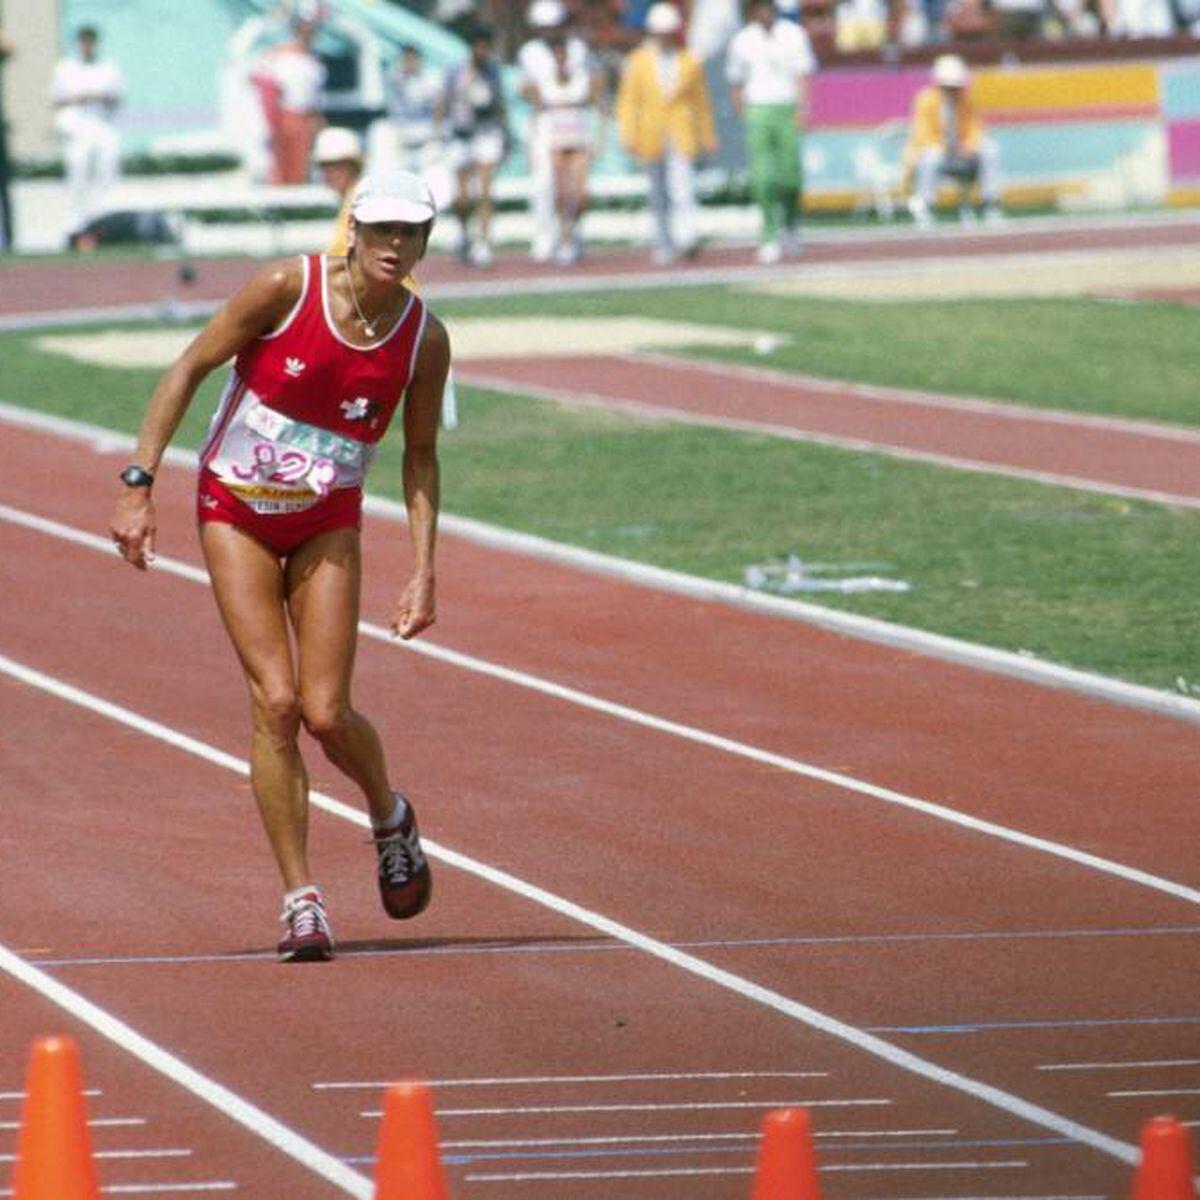 Mujer que cruza la meta imagen de archivo. Imagen de atletismo